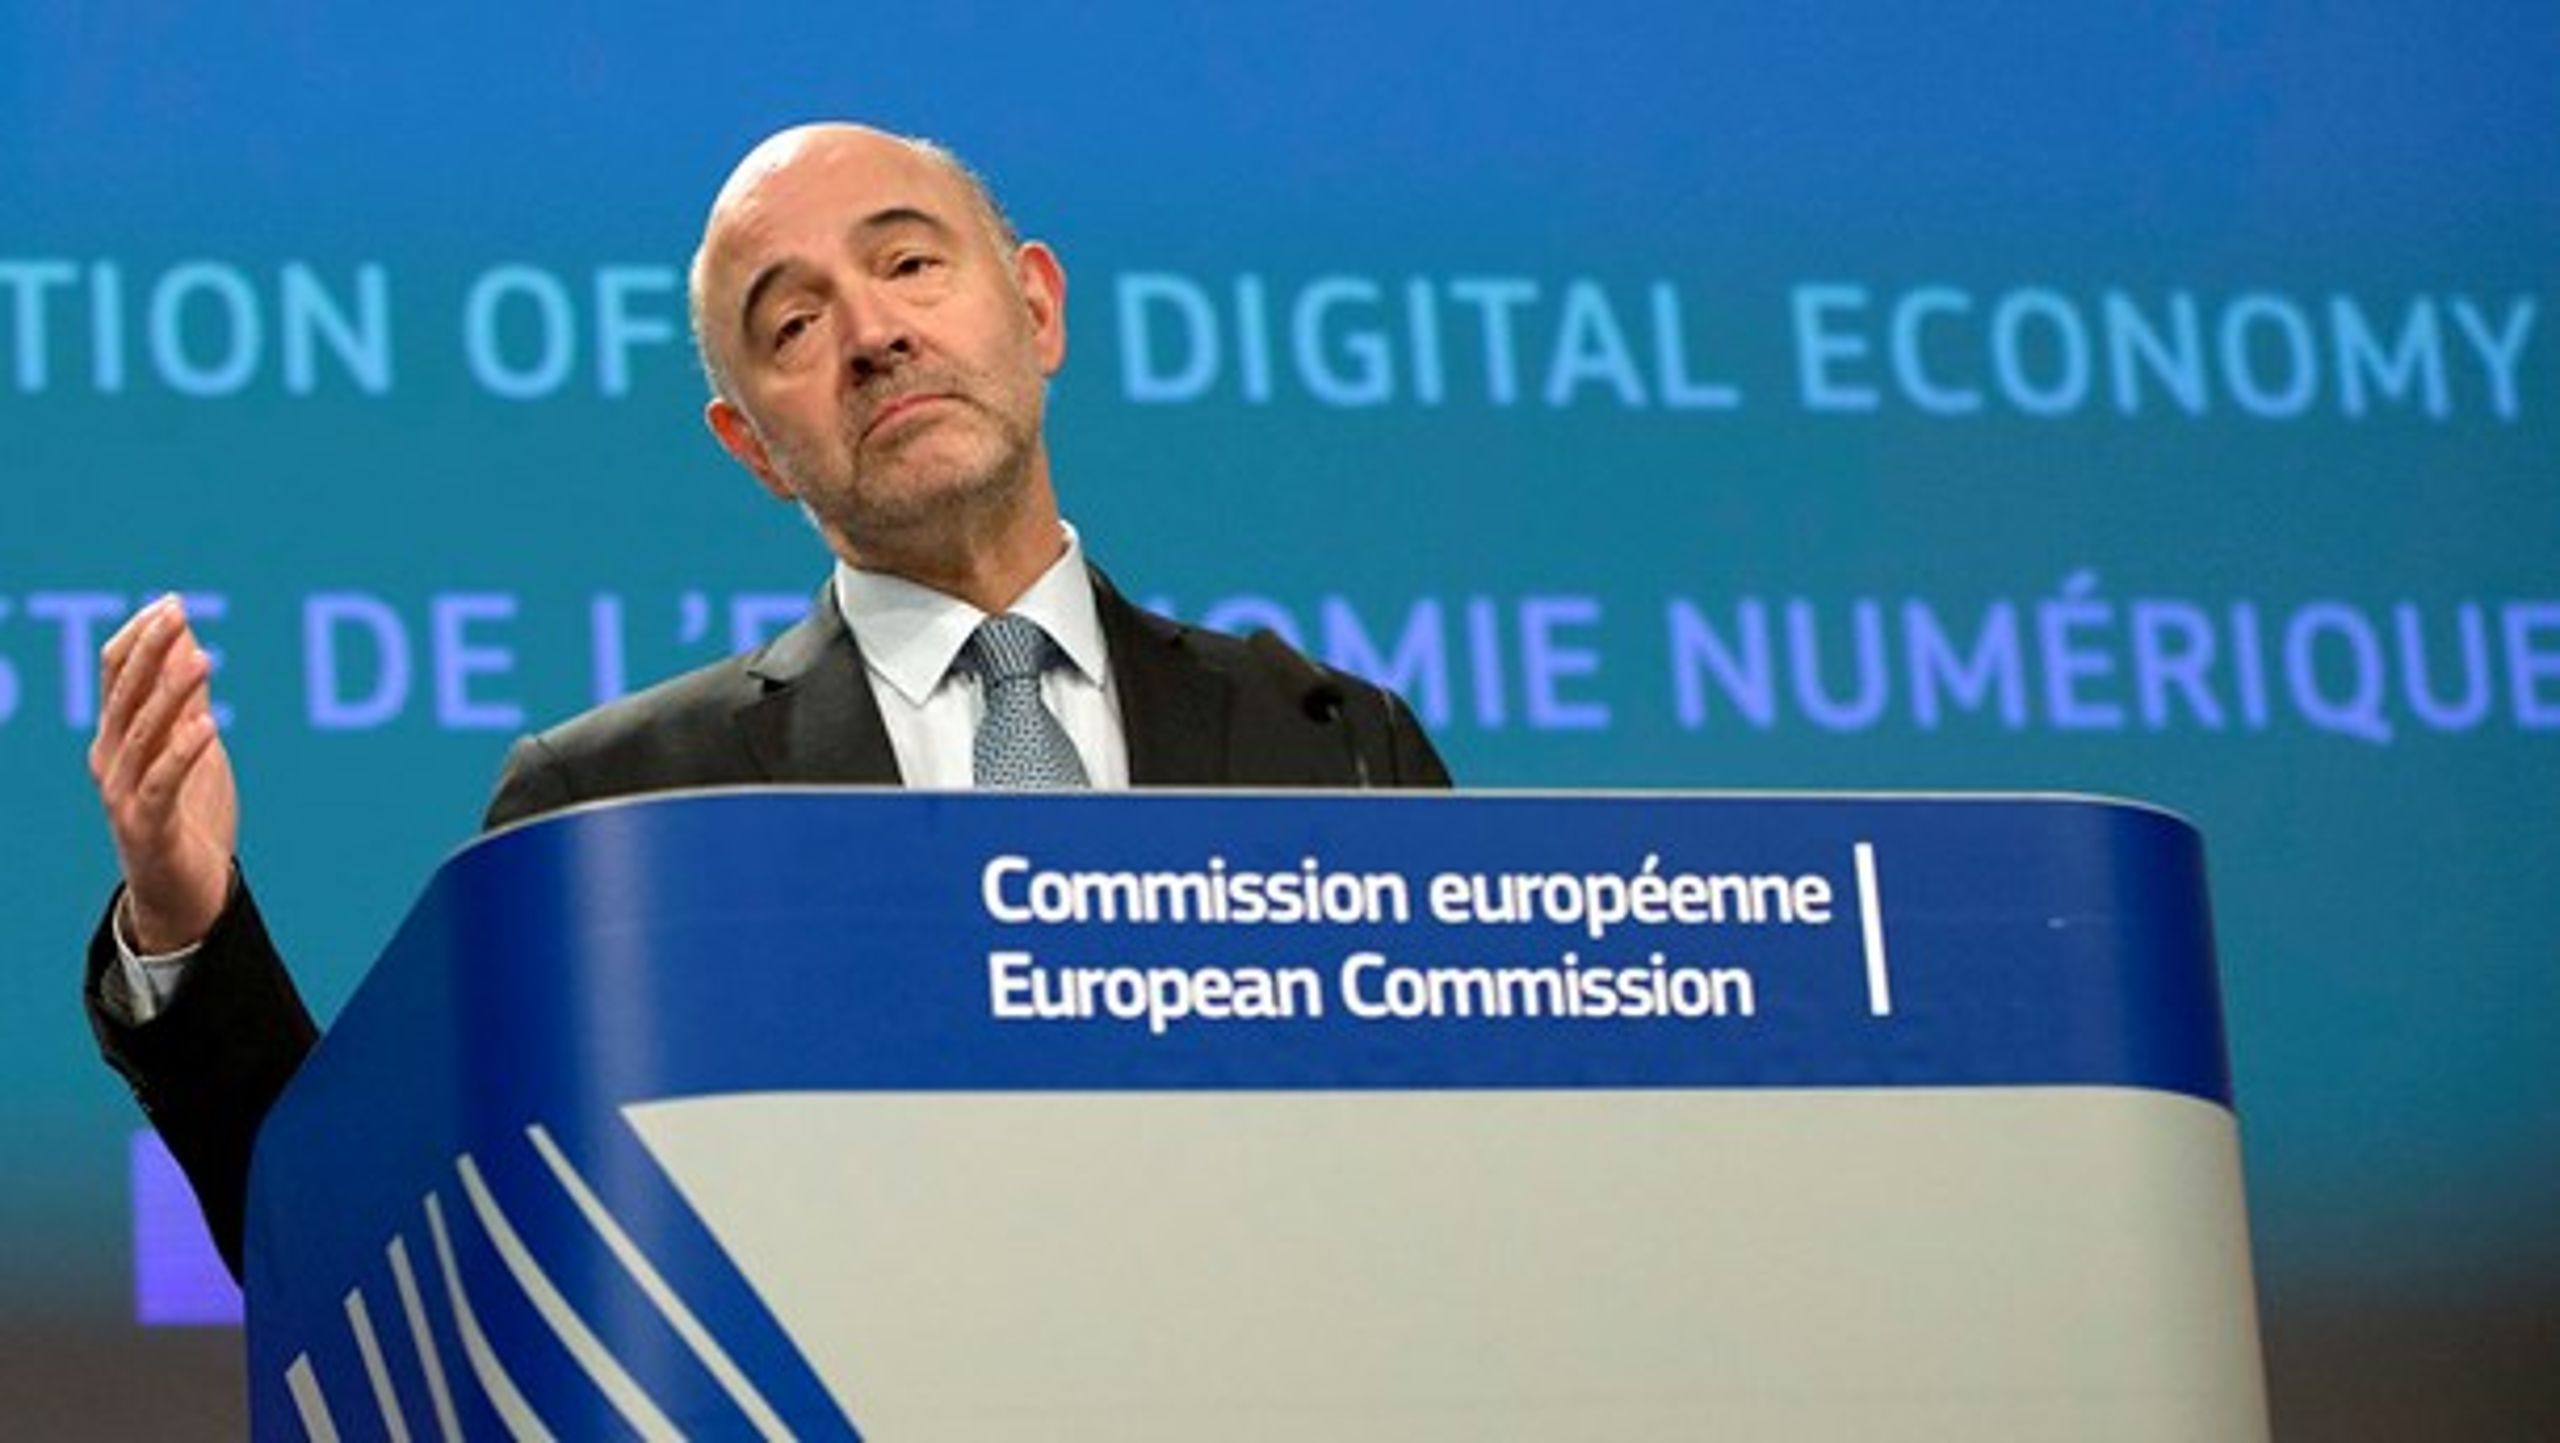 Pierre Moscovici,
kommissær for økonomiske og finansielle anliggender samt beskatning
og told, fremlagde i dag EU-Kommissionens forslag til beskatning af ”den
digitale økonomi”.